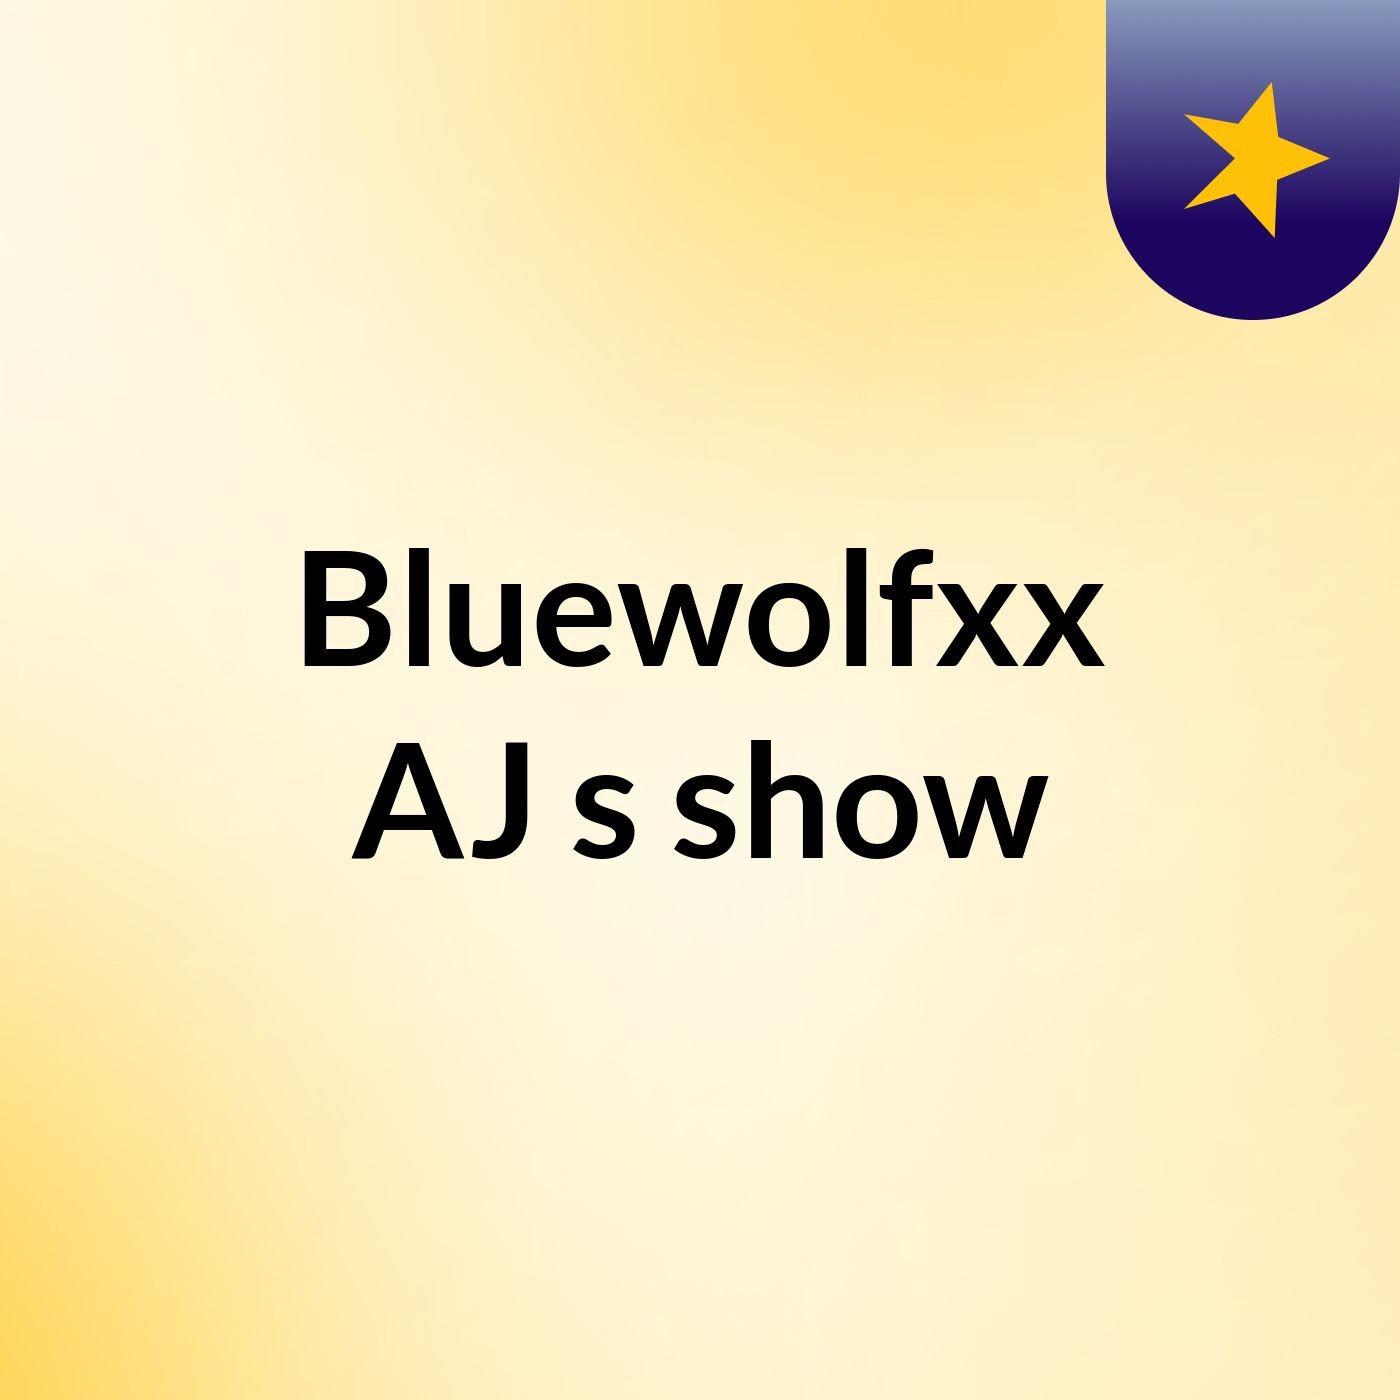 Bluewolfxx AJ's show